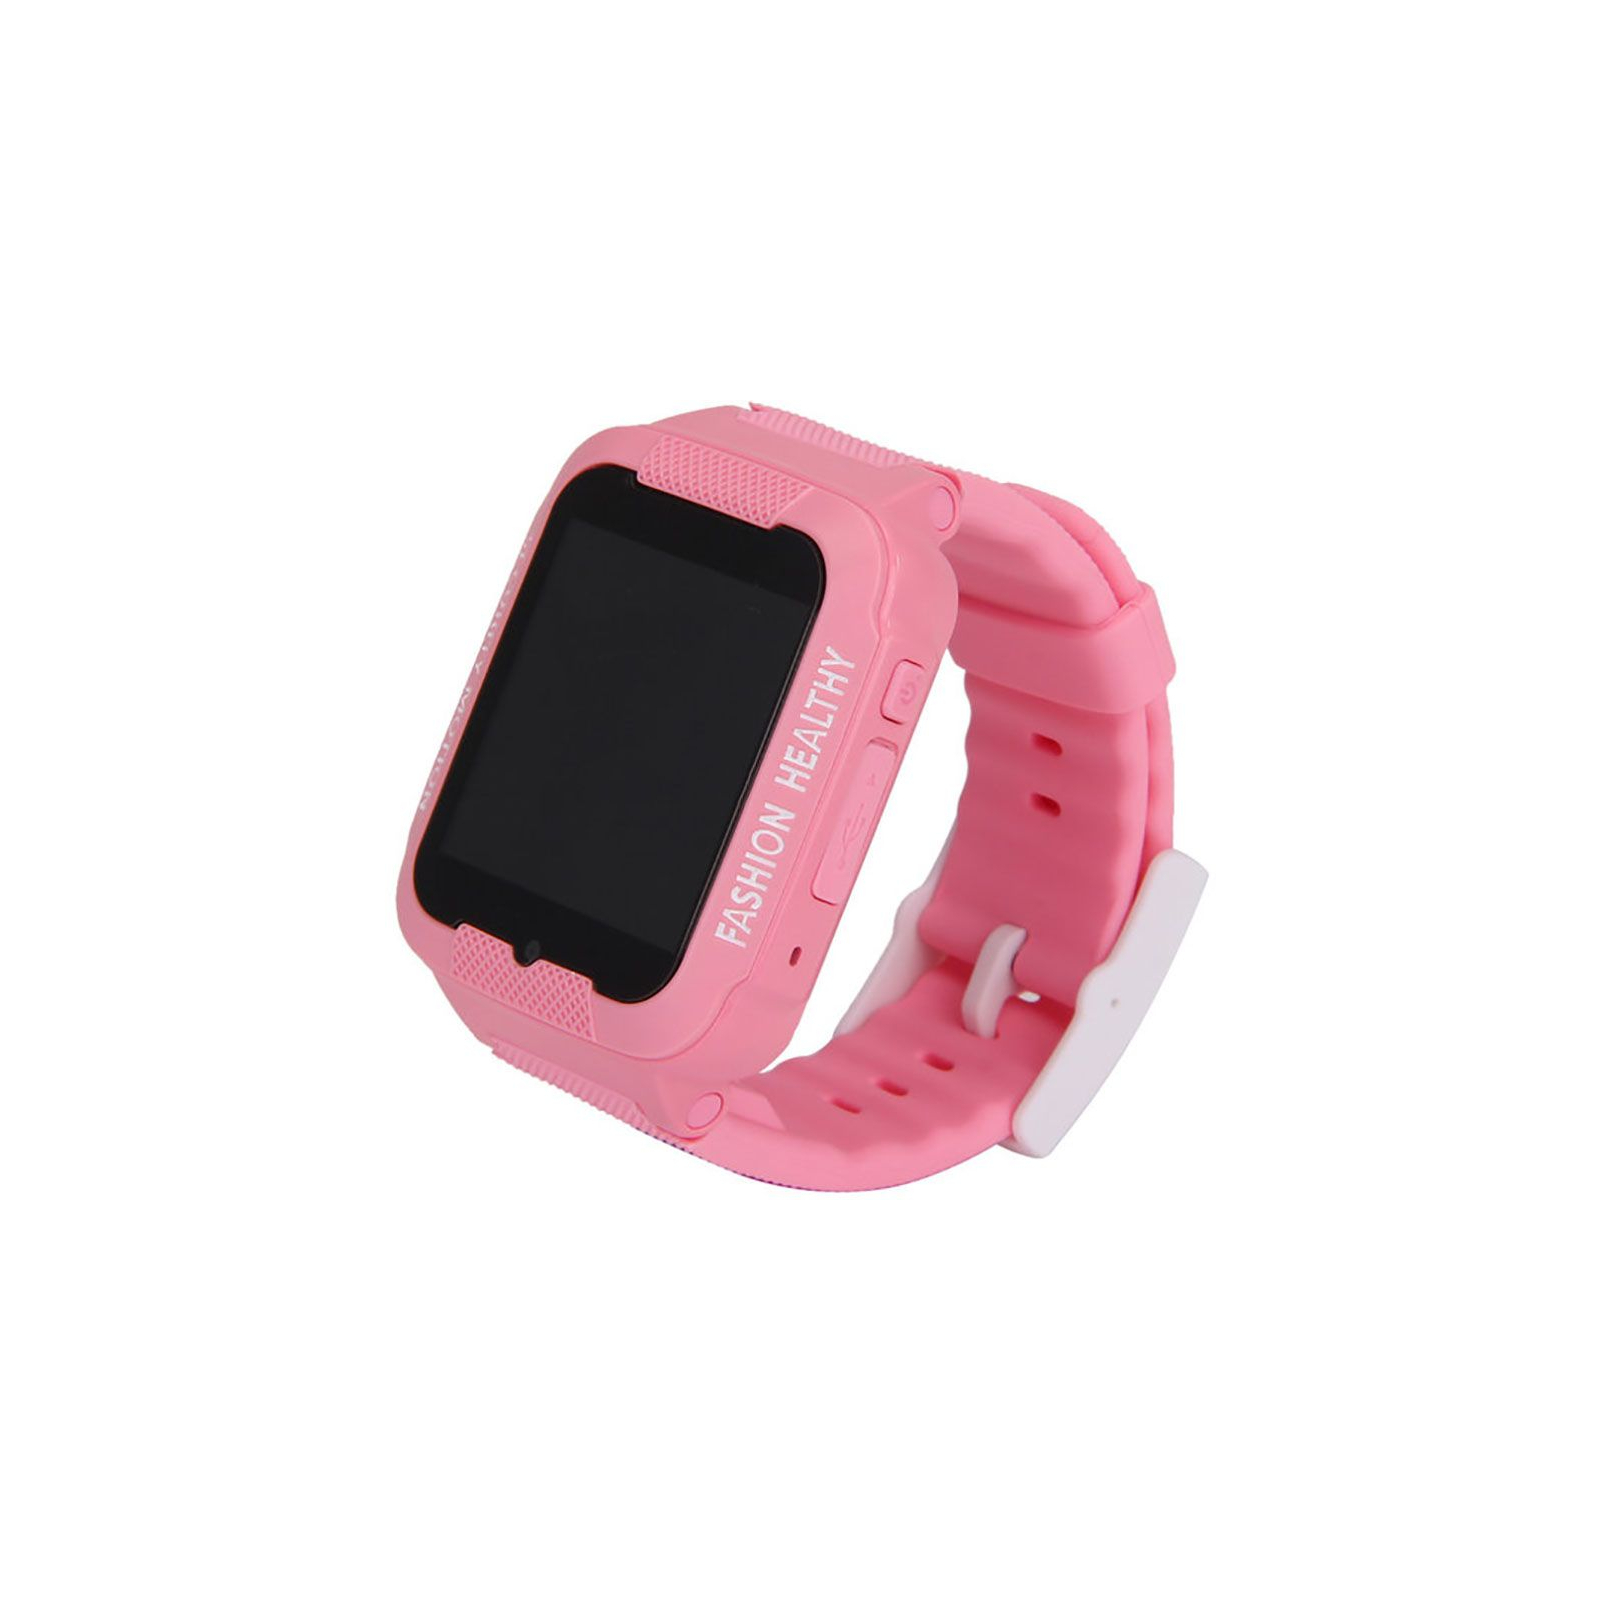 Смарт-годинник UWatch K3 Kids waterproof smart watch Blue (F_51807) зображення 2